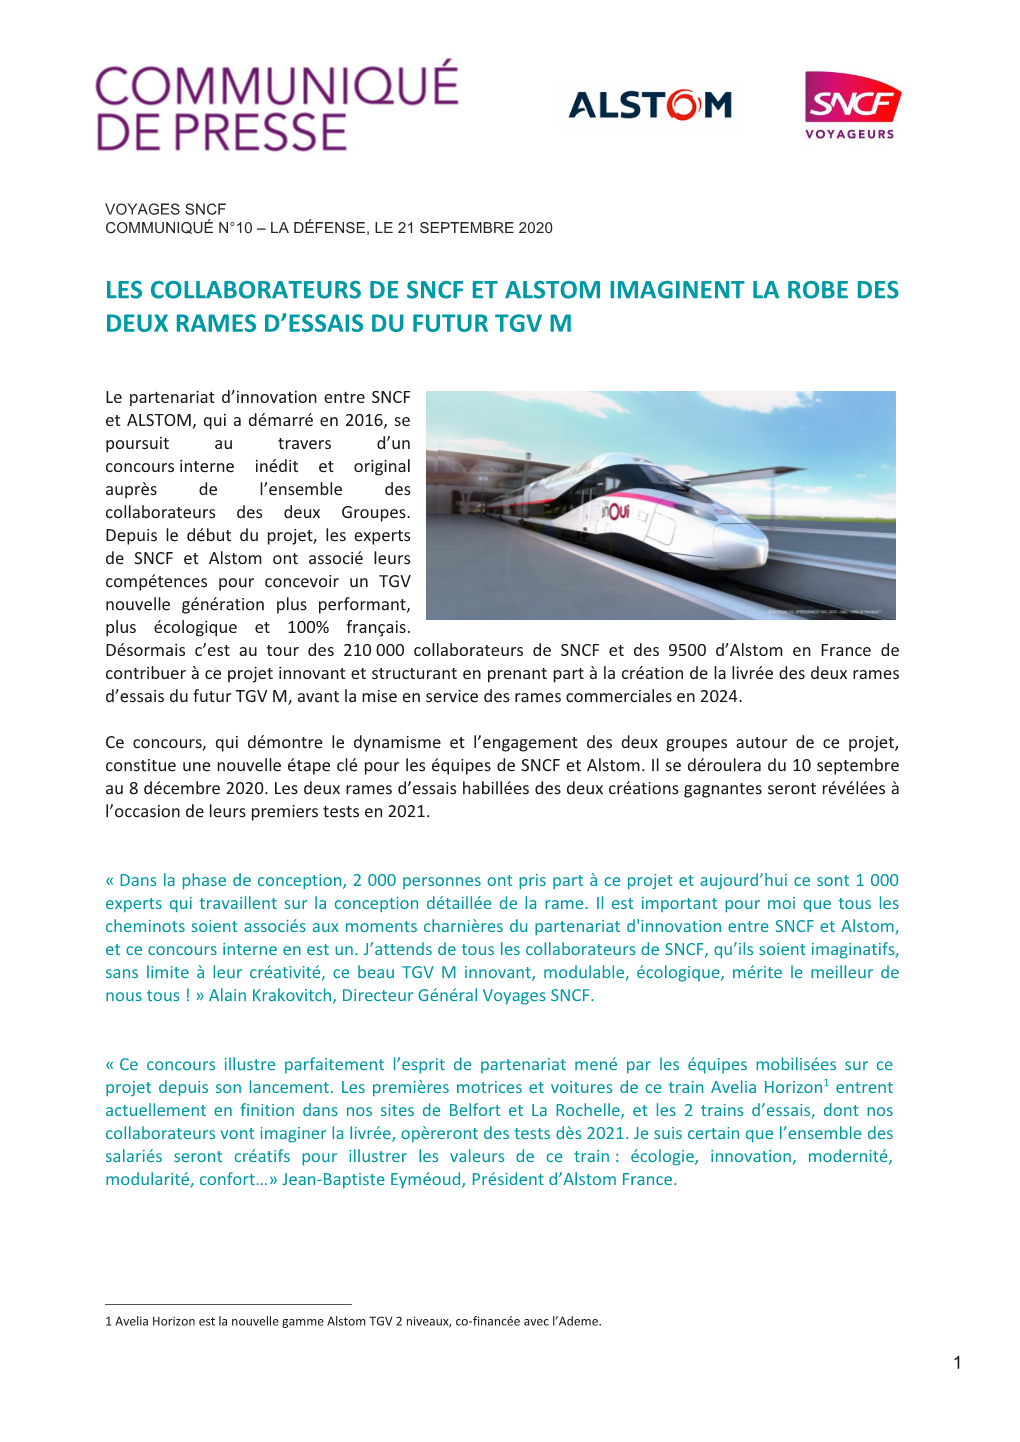 Les Collaborateurs De Sncf Et Alstom Imaginent La Robe Des Deux Rames D'essais Du Futur Tgv M